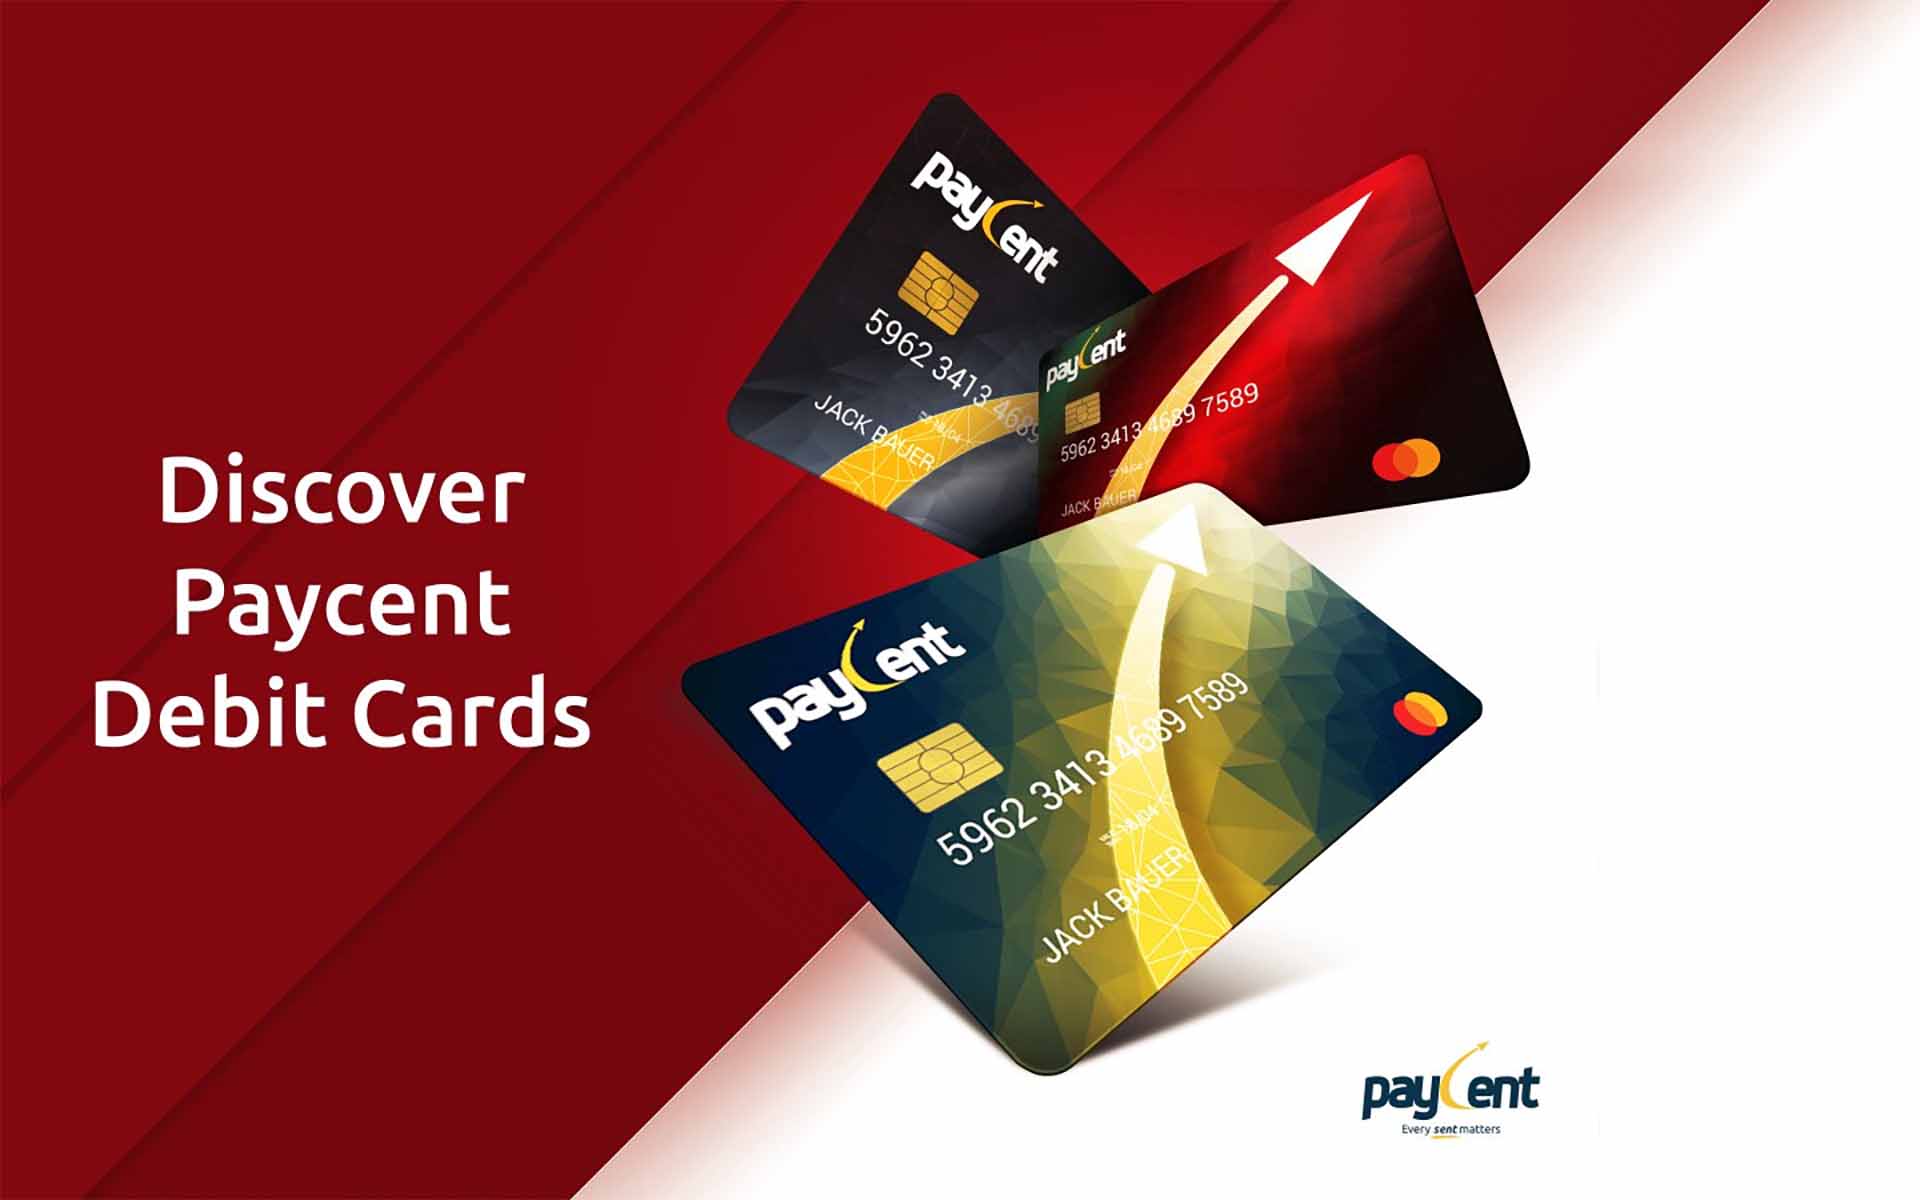 Paycent Debit Cards